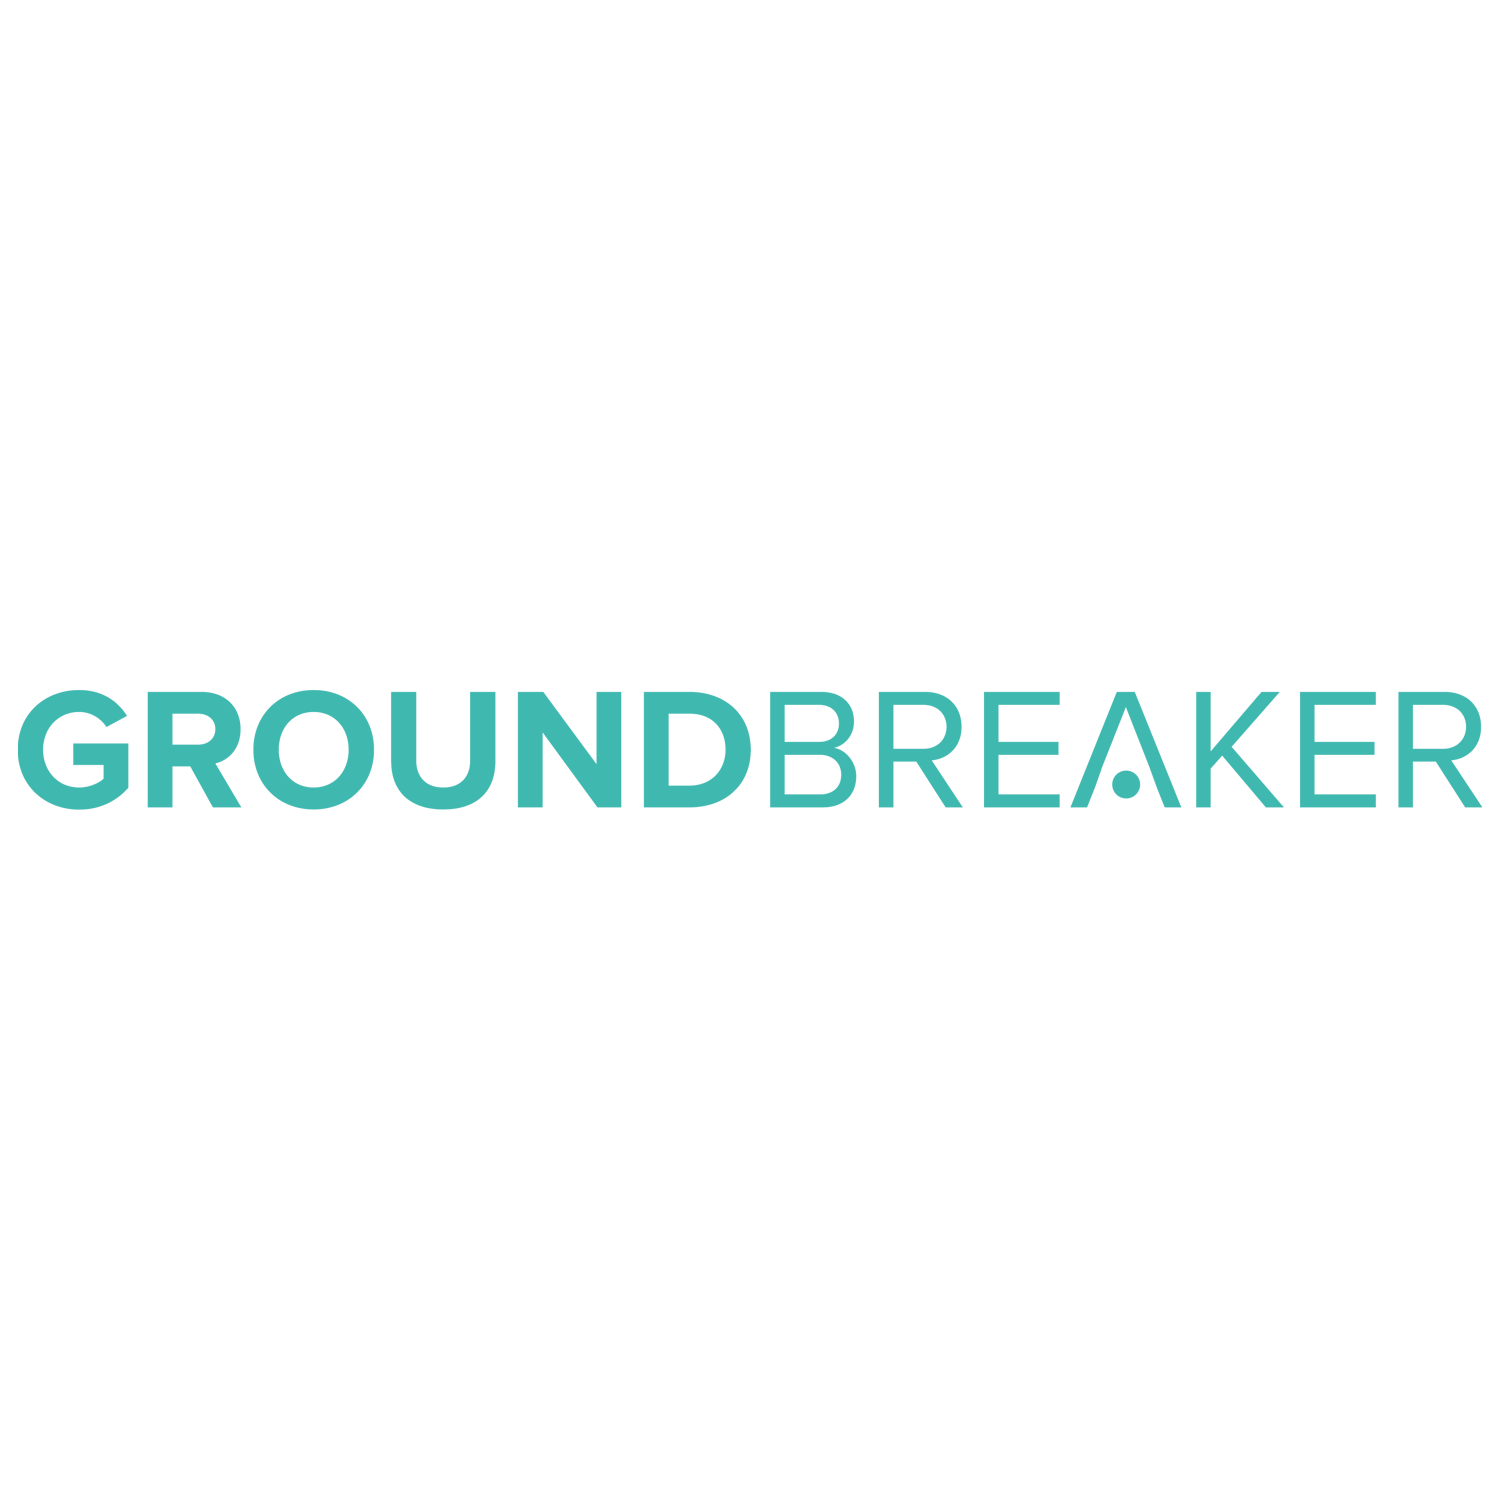 Groundbreaker